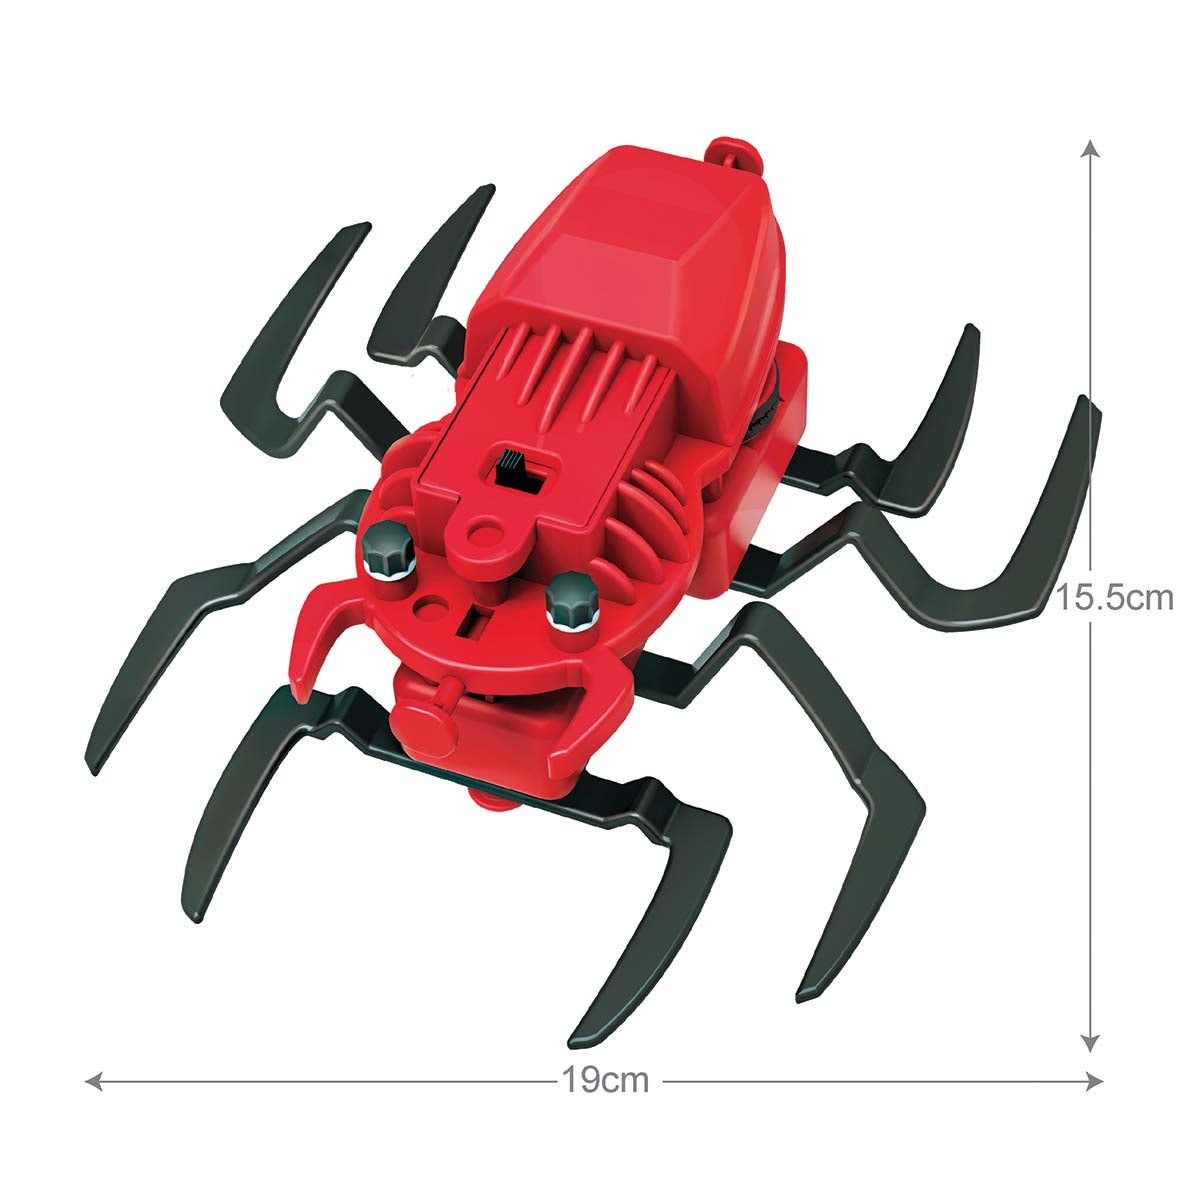 4M-Kidz Robotix Spider Robot 0/4